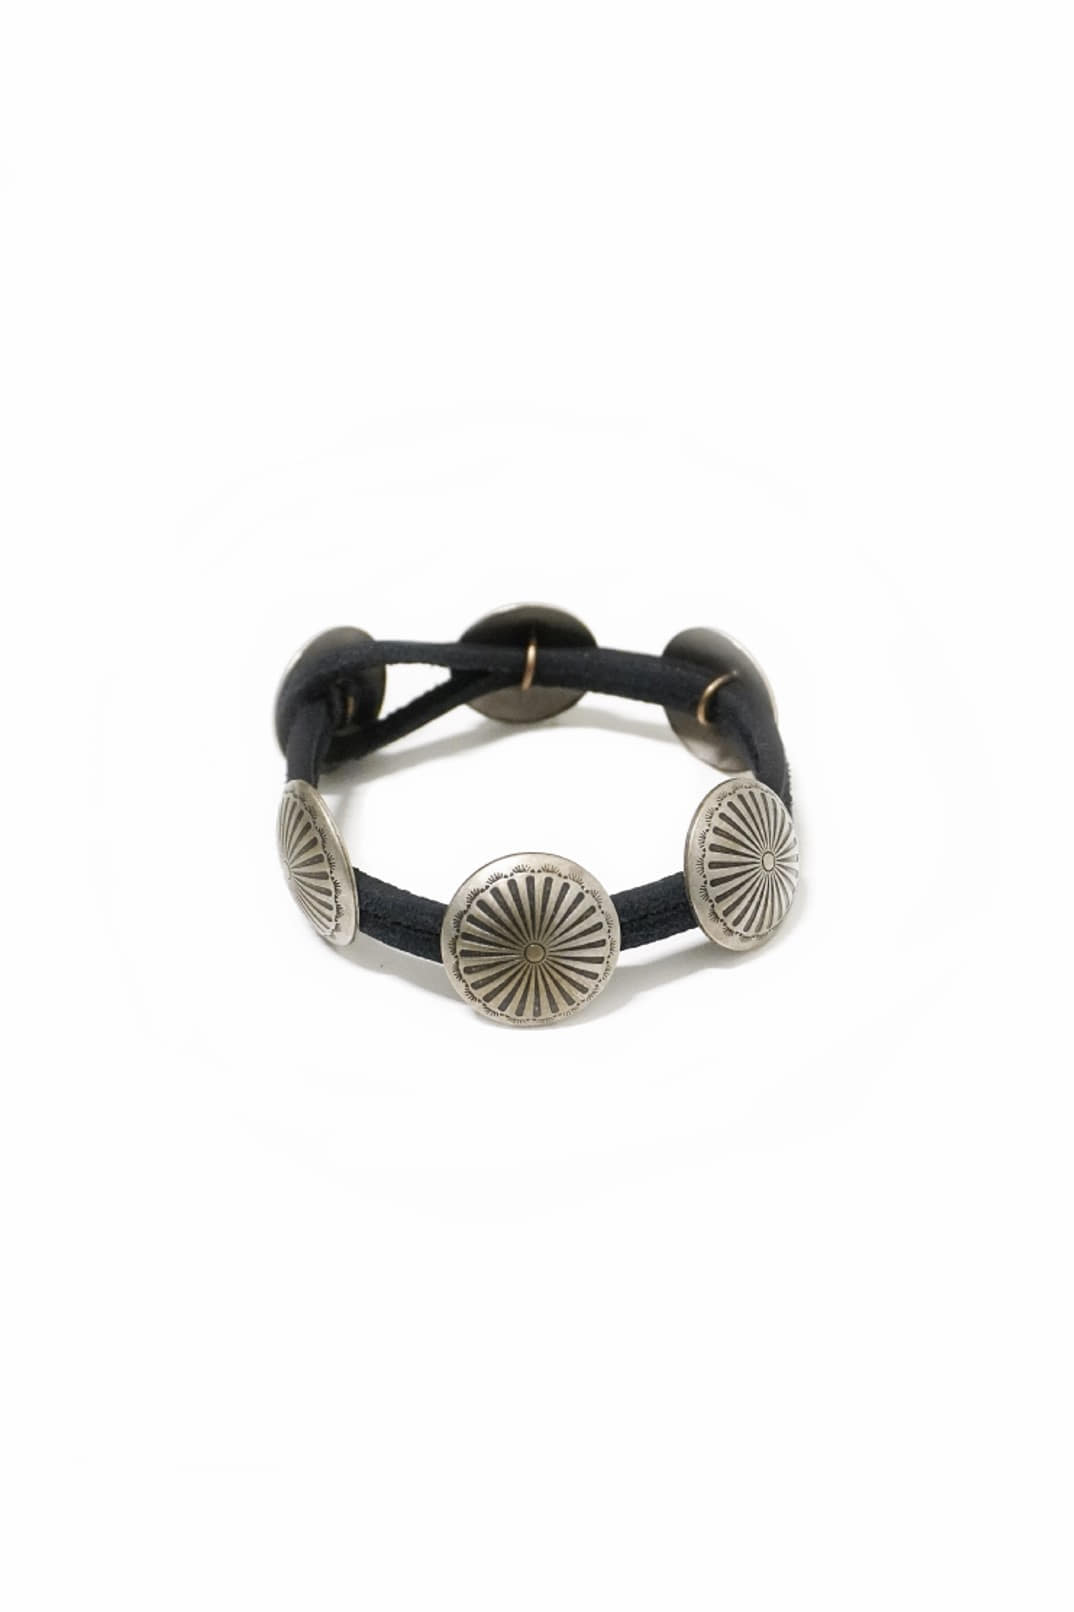 [YUKETEN] Leather Bracelet with Concho - Black Needlepoint